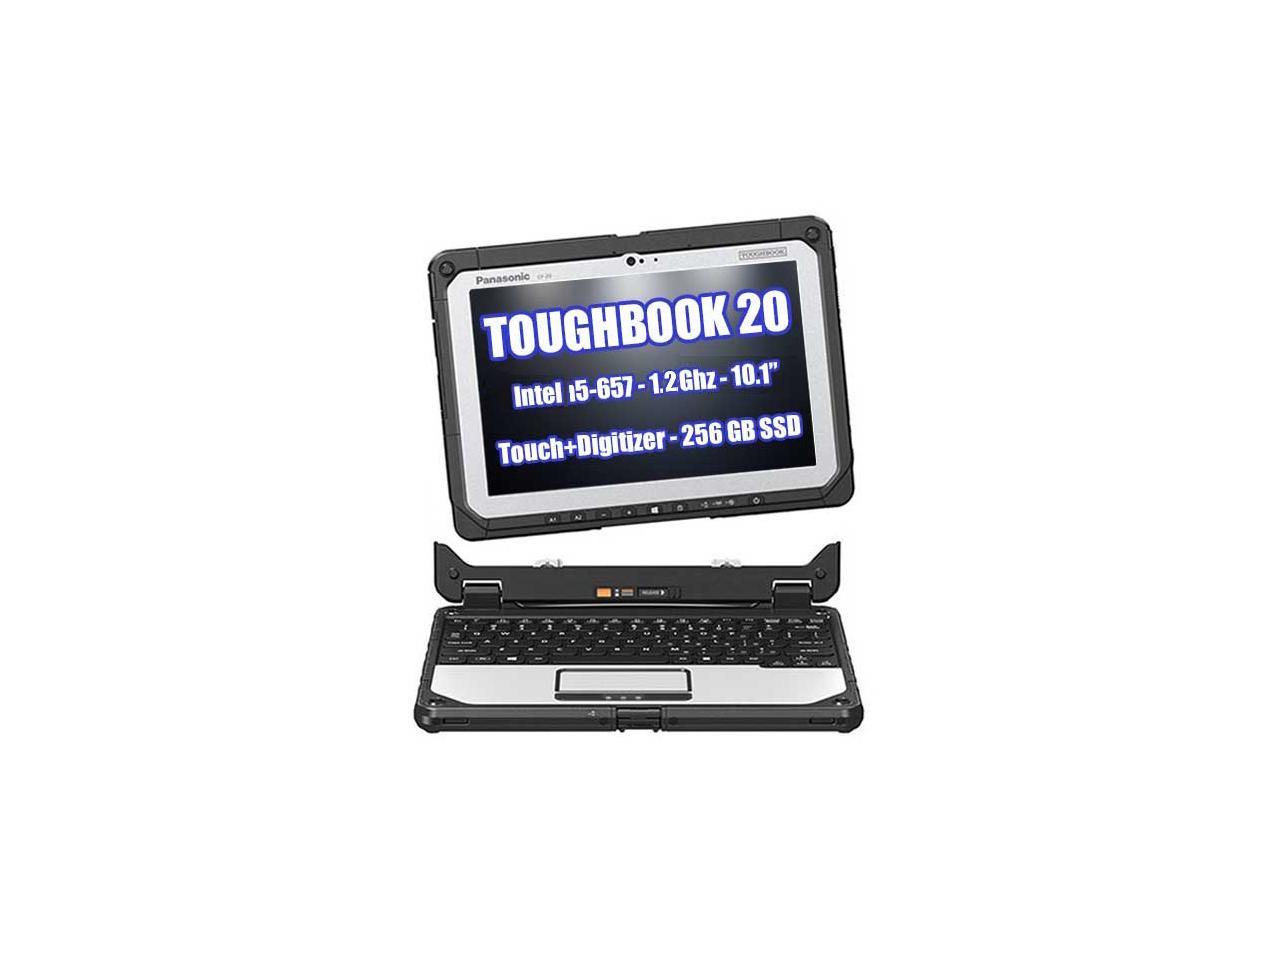 Panasonic Toughbook Cf 20 1 2ghz 4g Lte Emissive Backlit Keyboard